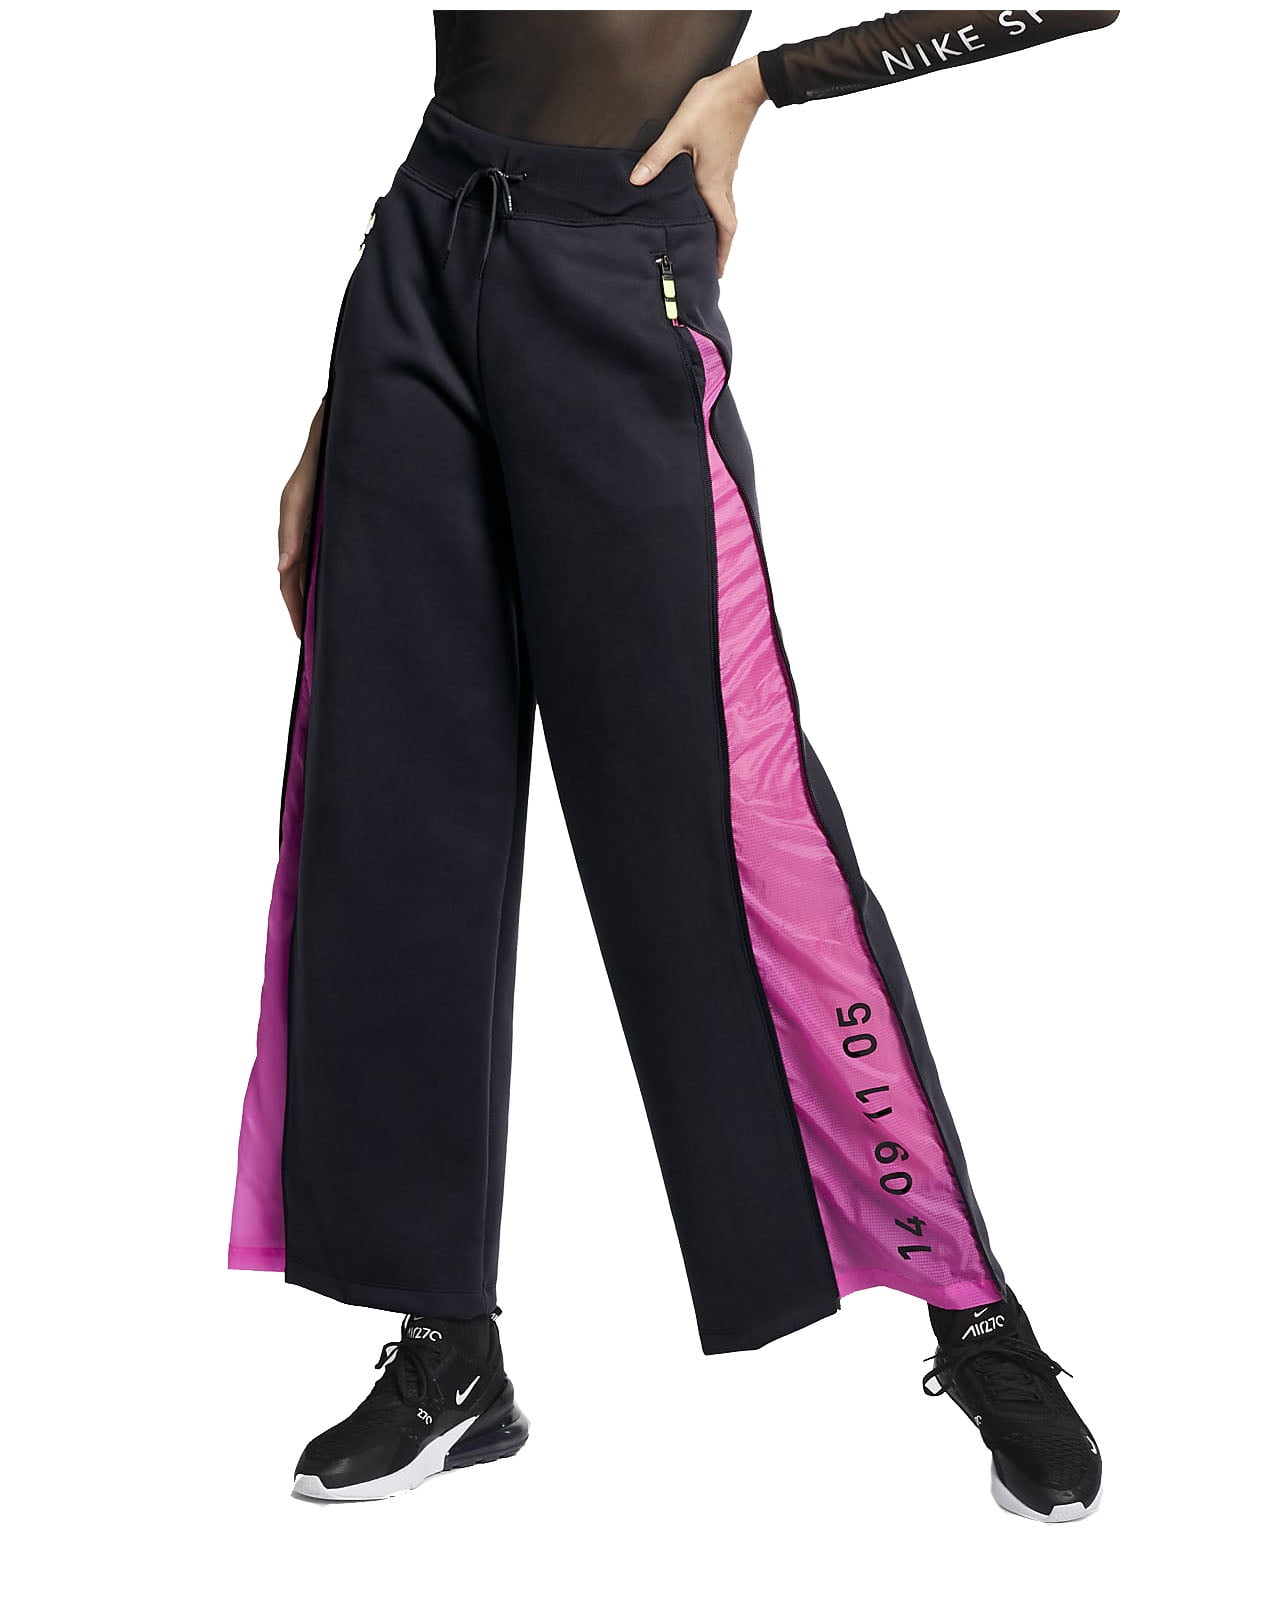 Nike Women's Tech Pack Sportwear Loose Fit Workout Side zip Pants  (Black/Hyper Pink, X-Small)